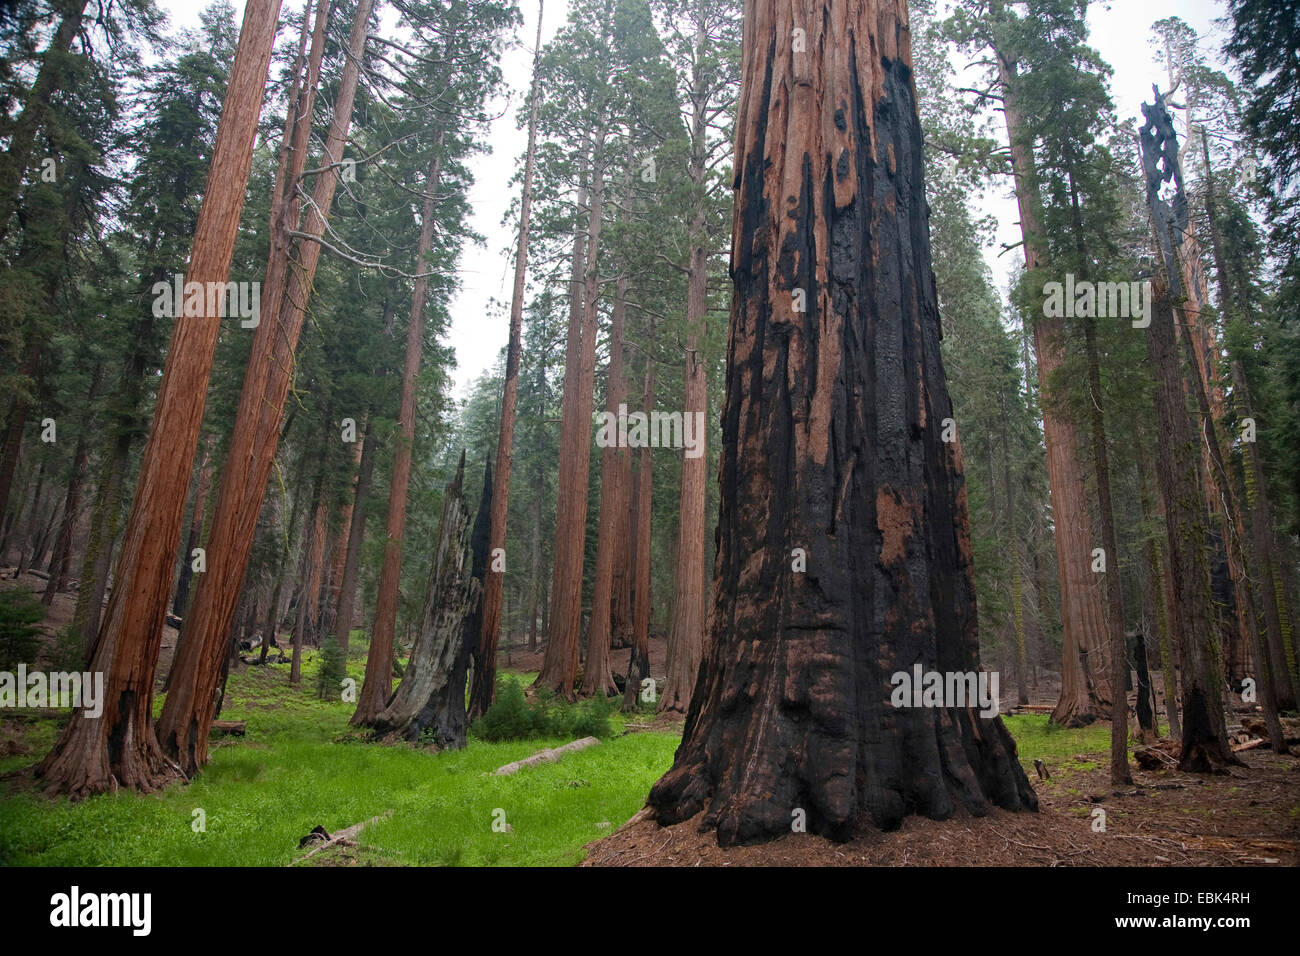 giant sequoia, giant redwood (Sequoiadendron giganteum), trees im Giant Forest , USA, California, Sequoia NP Stock Photo